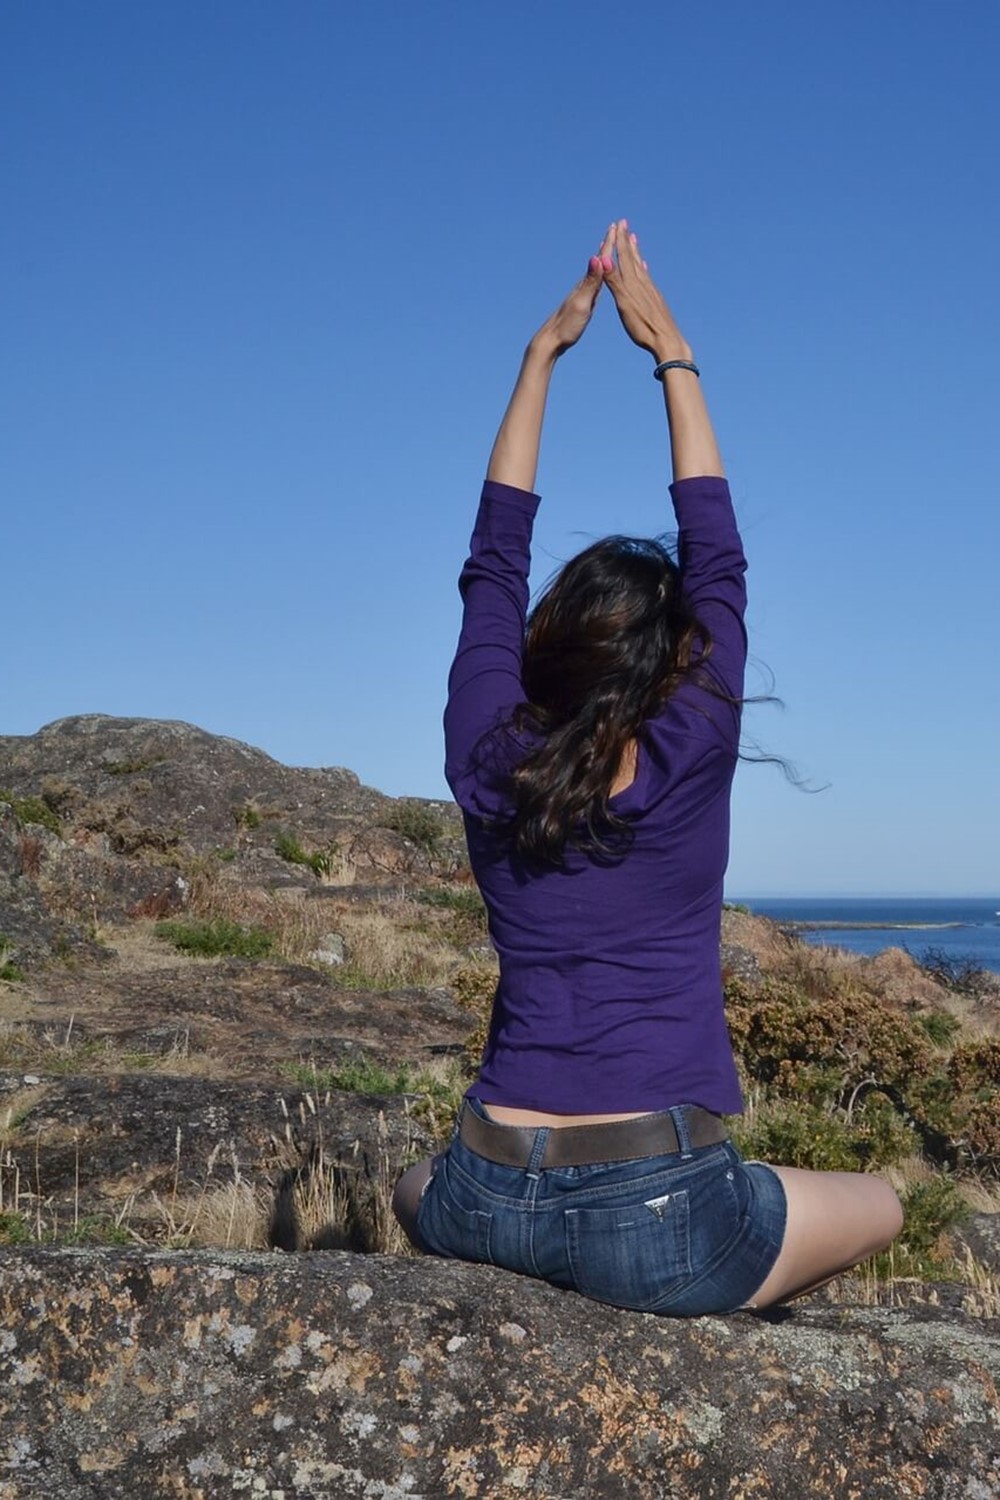 Kvinde i yogastilling på klippe.jpg